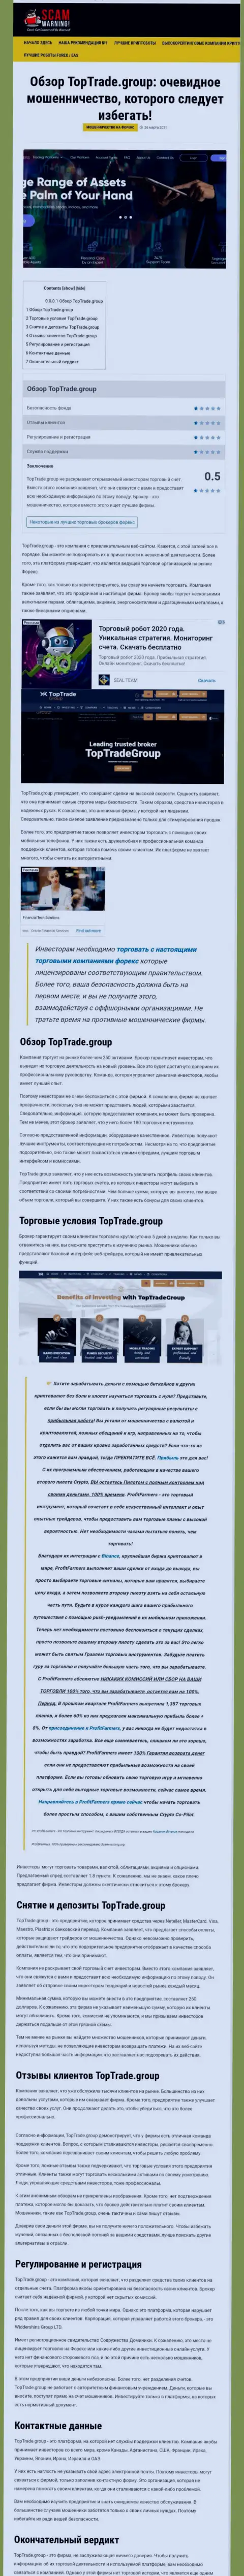 Статья с обзором противоправных деяний TopTrade Group, направленных на кидалово клиентов